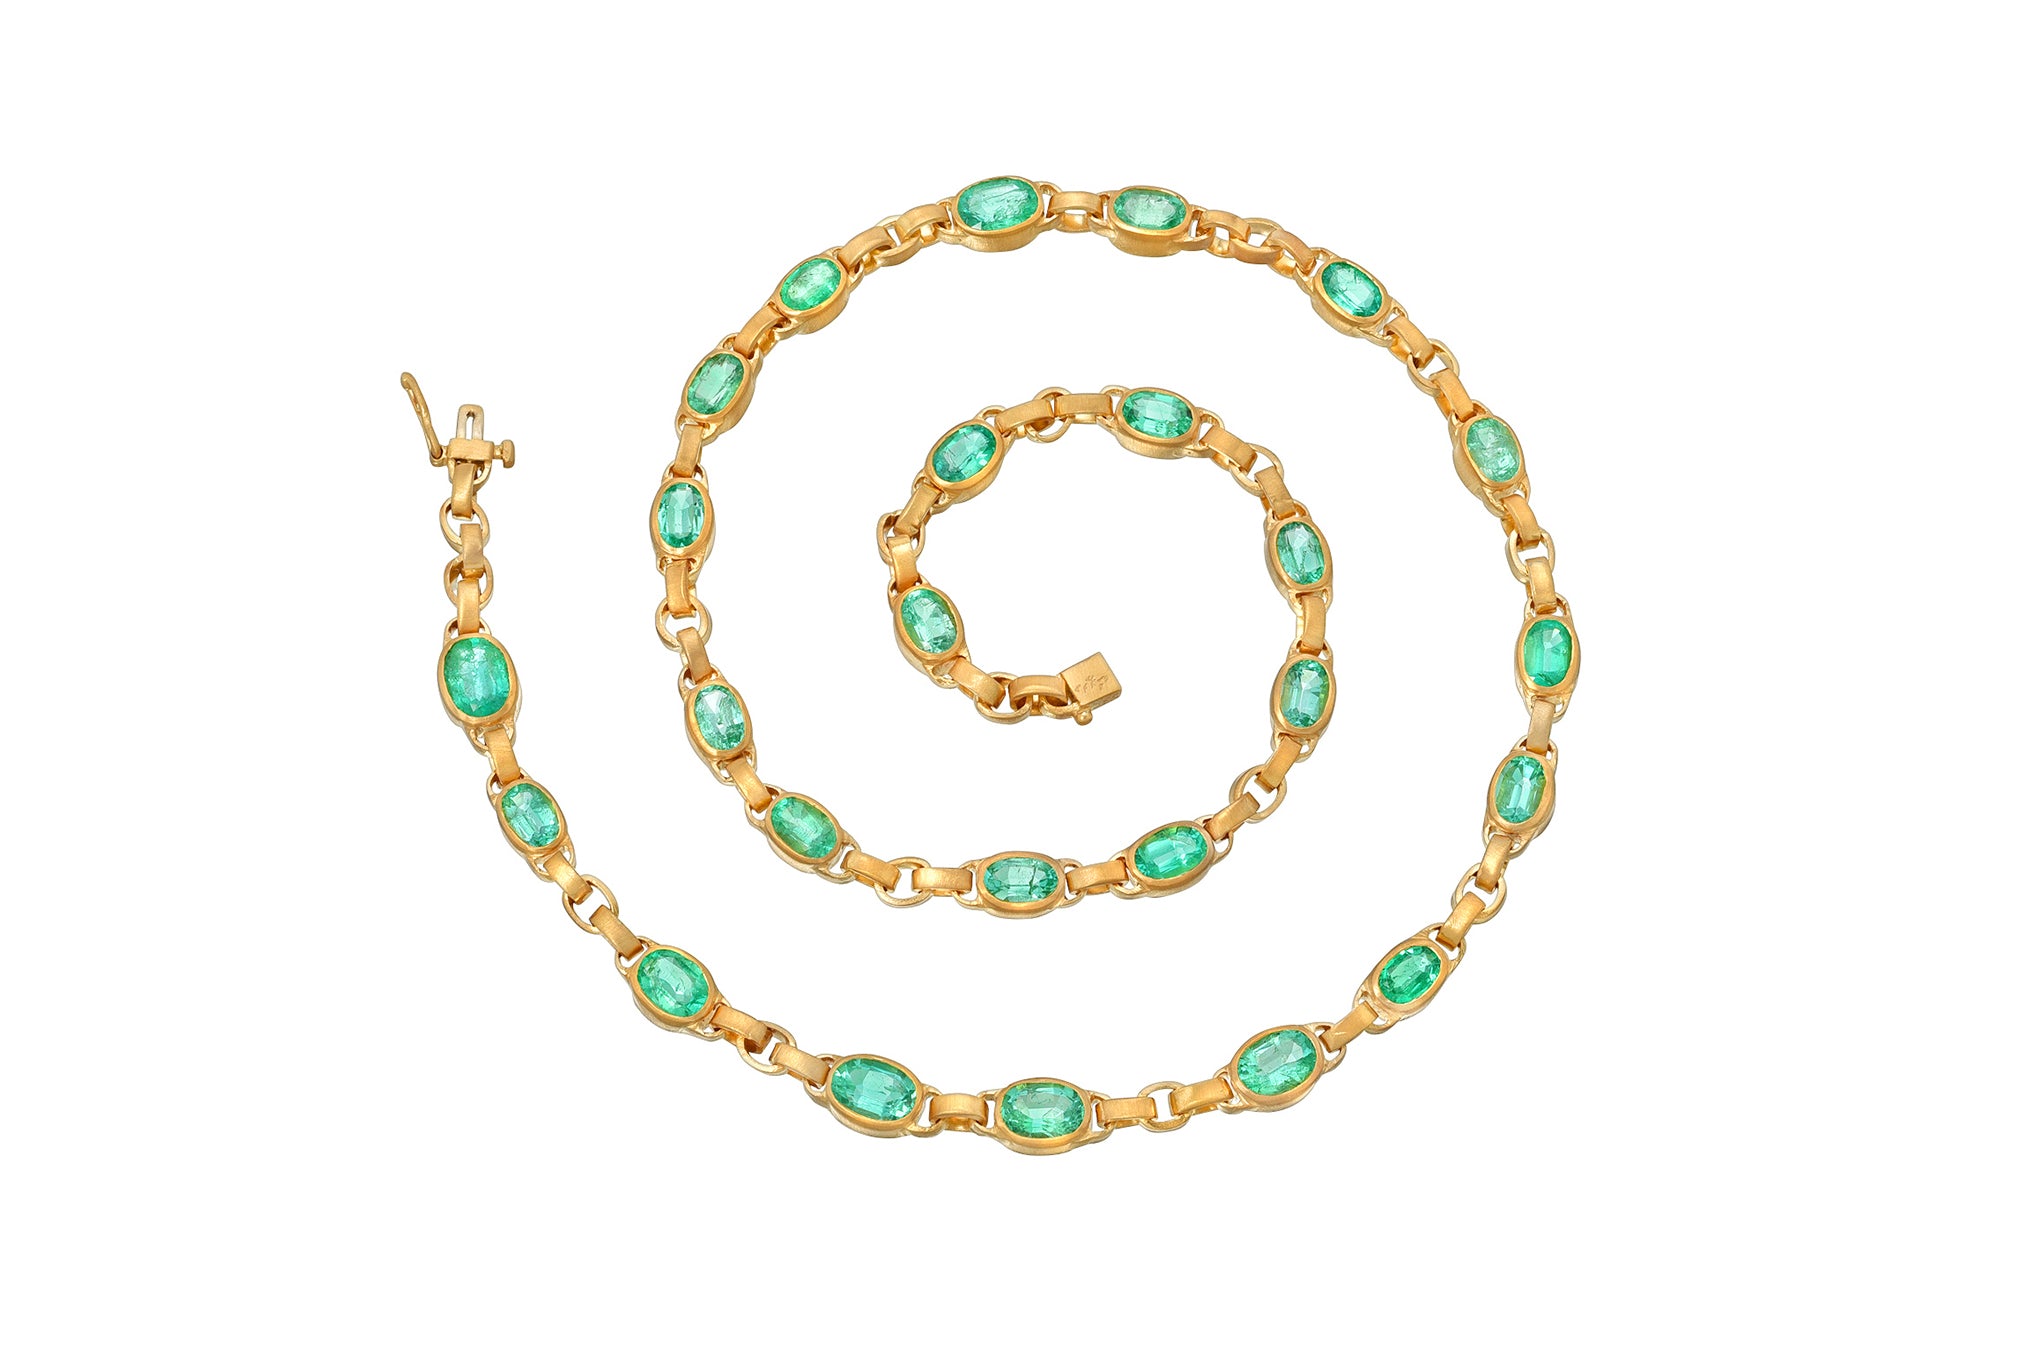 darius jewels darius khonsary mint emerald oval signature chain MUZO Emeralds 18k yellow gold